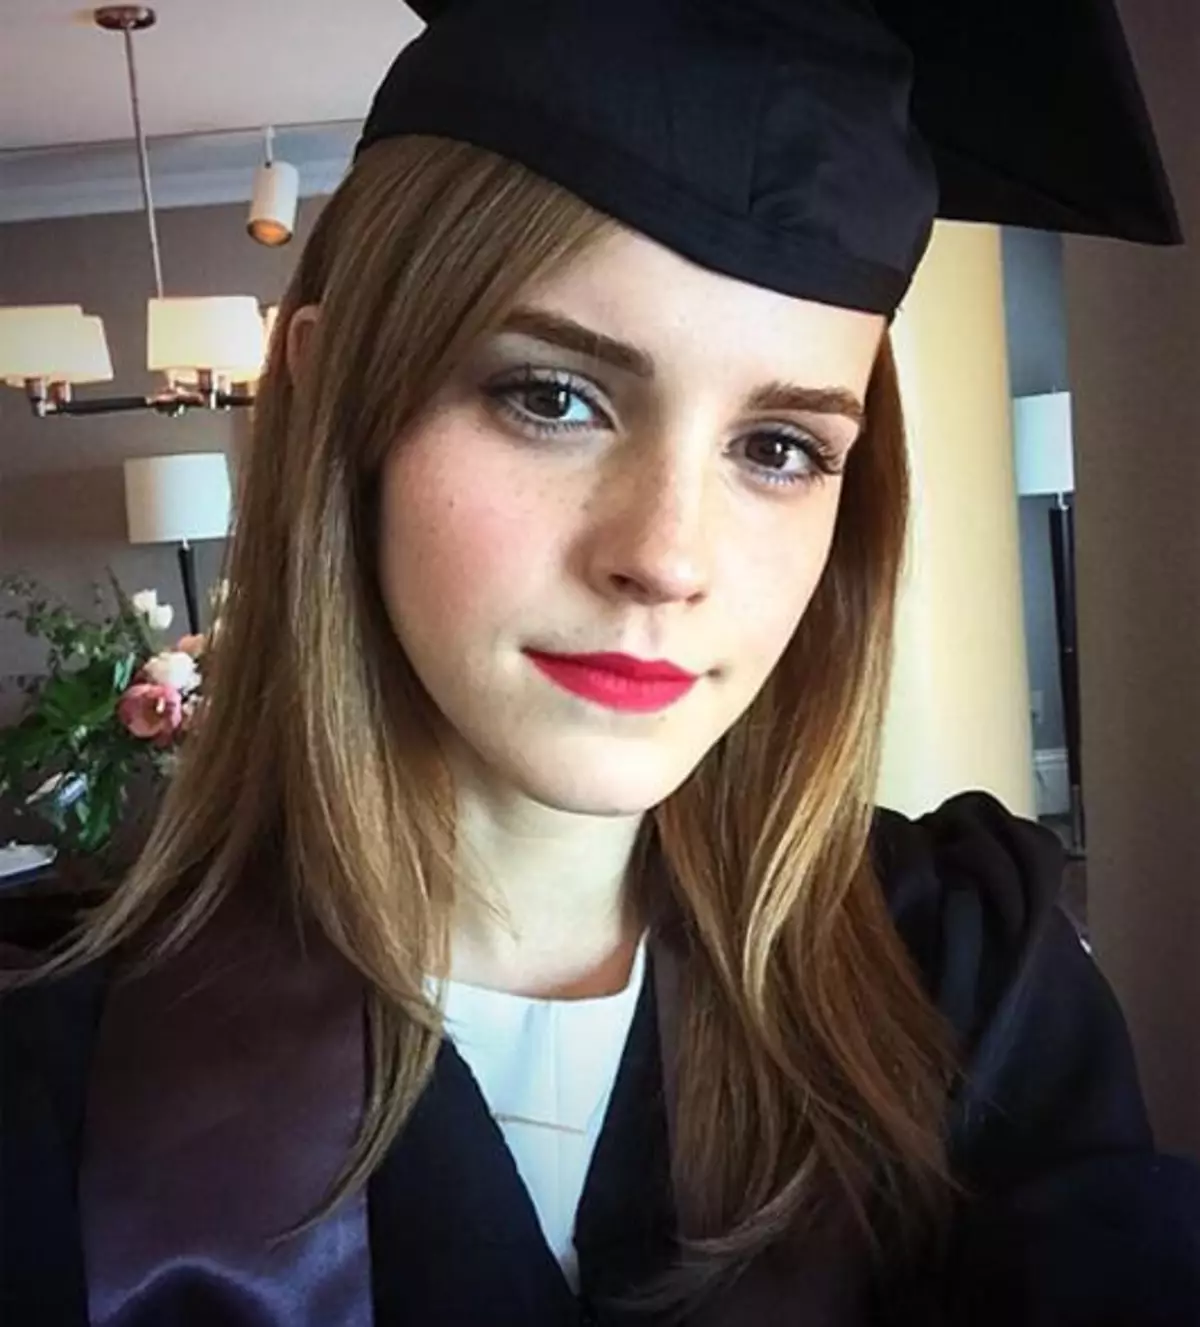 Emma Watson lauk Brownov University. Leikarinn fékk Bachelor gráðu í ensku bókmenntum